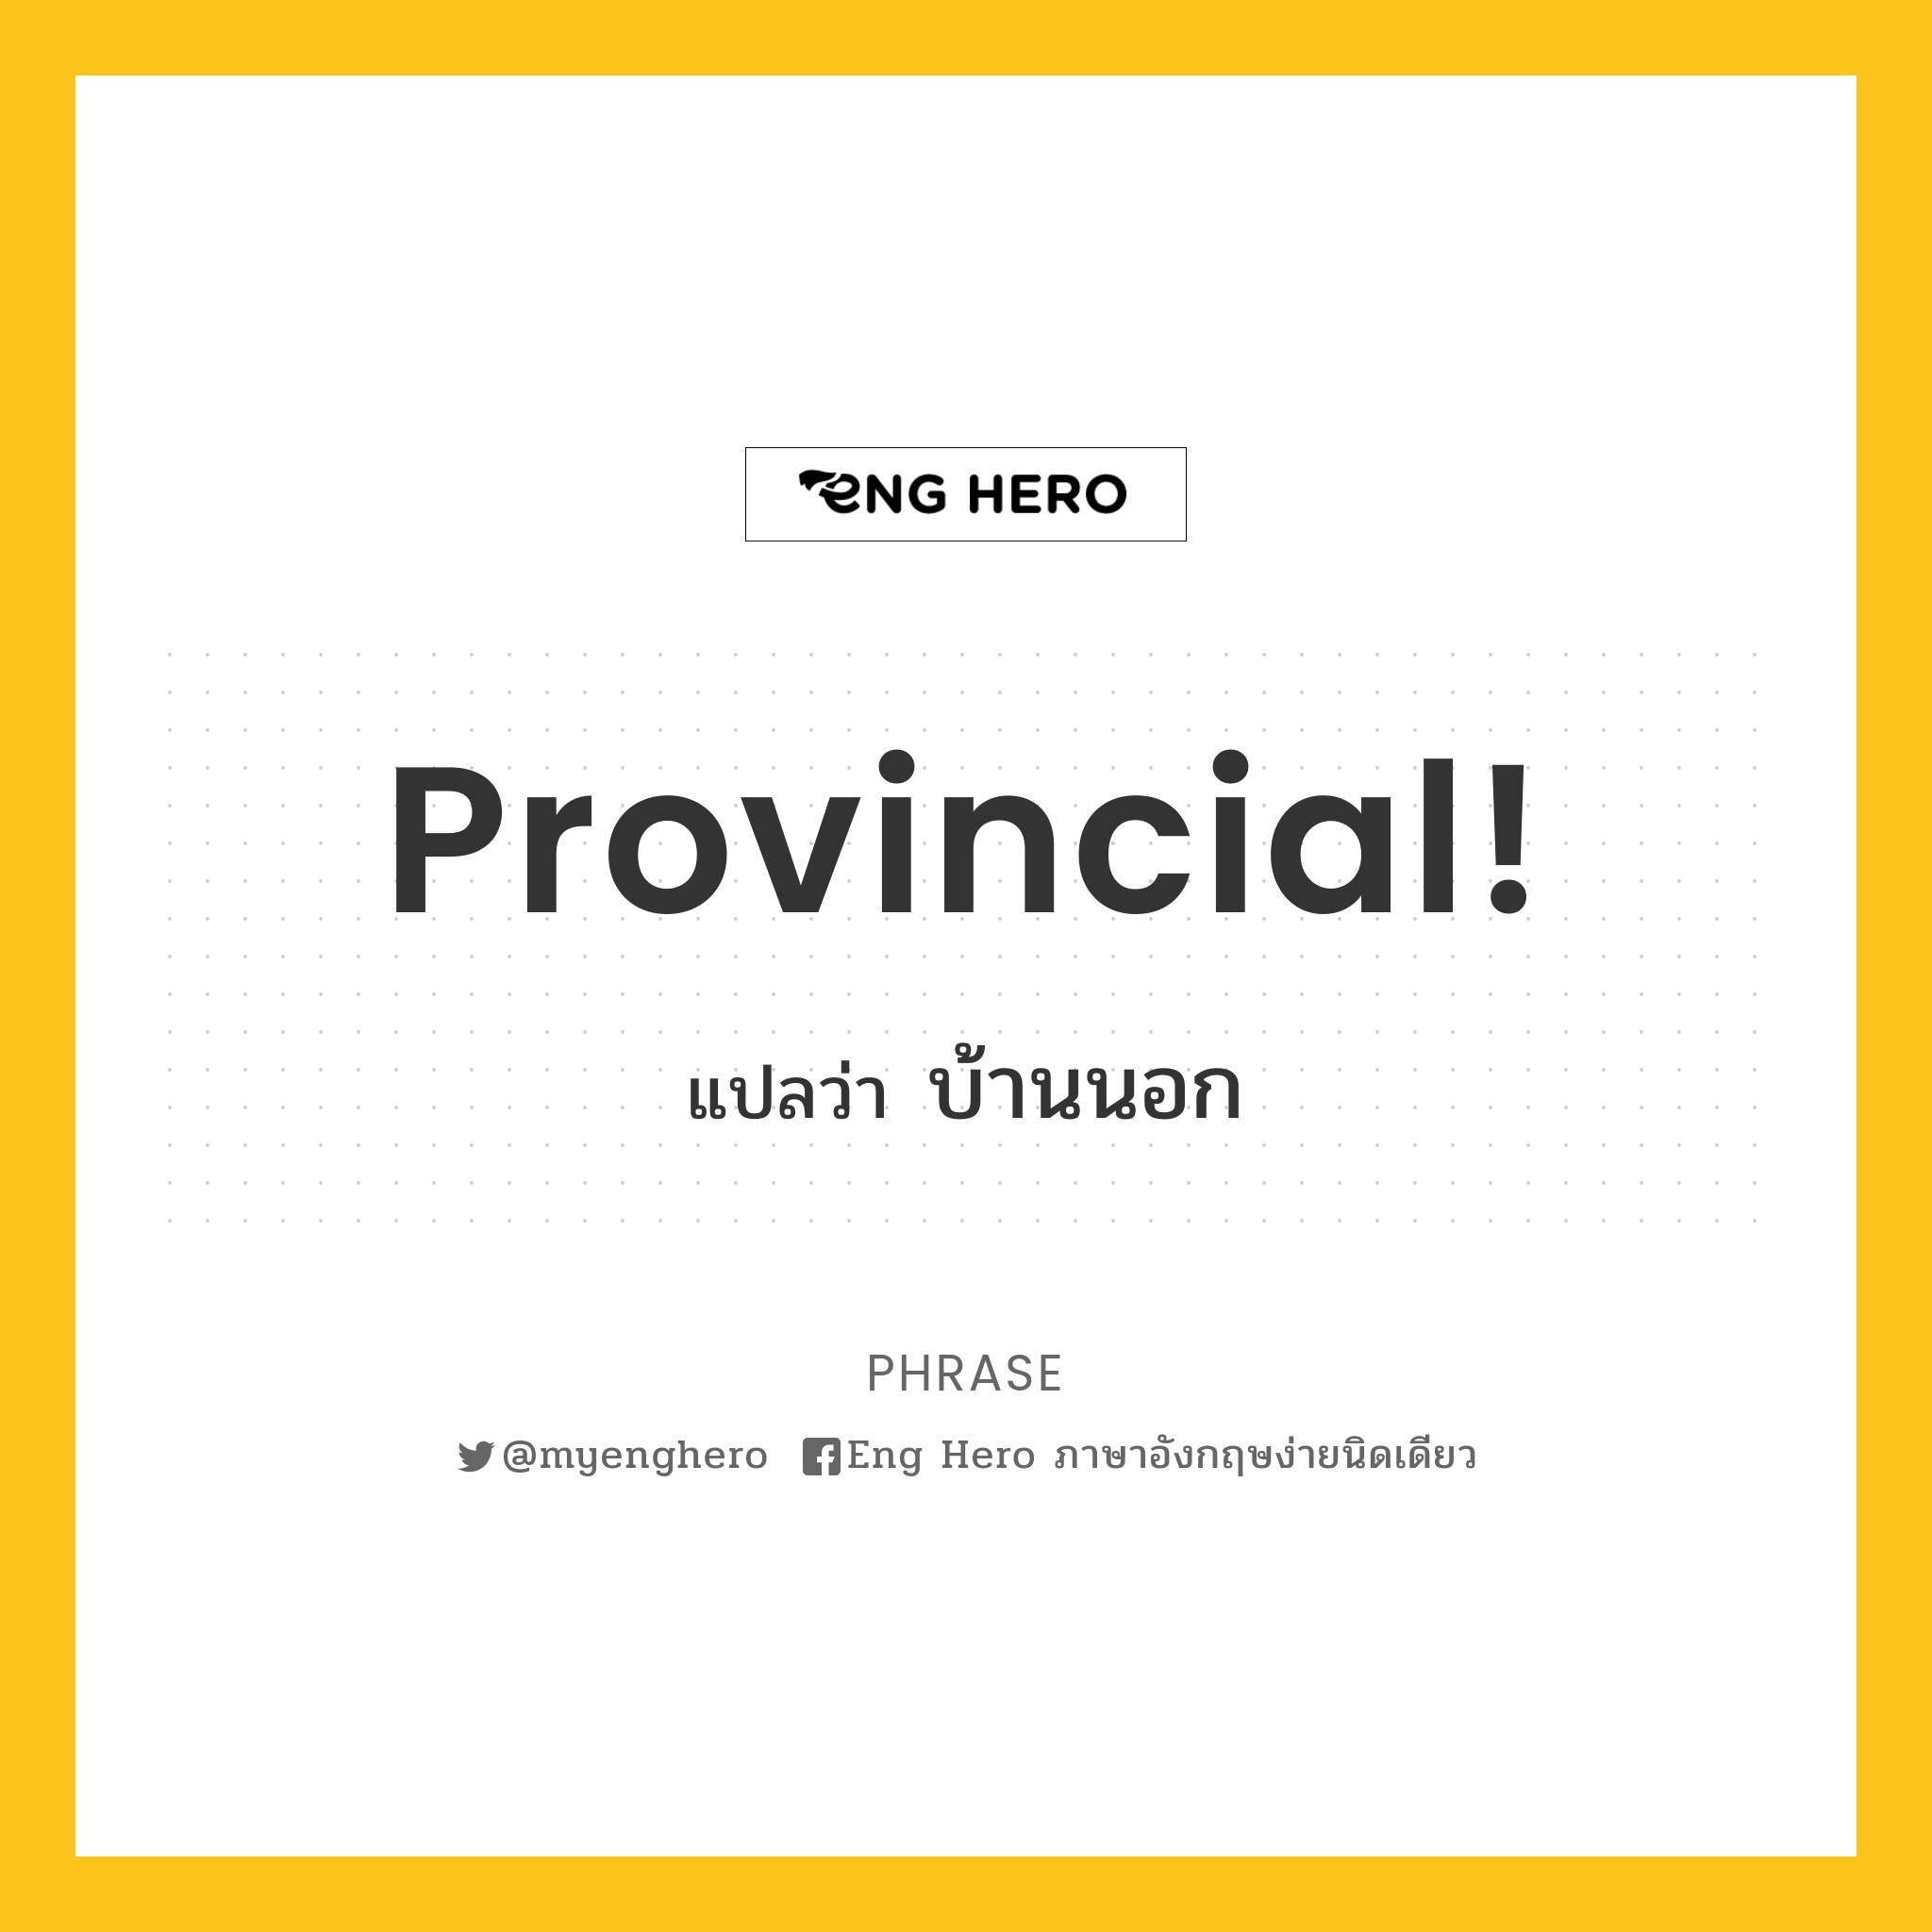 Provincial!